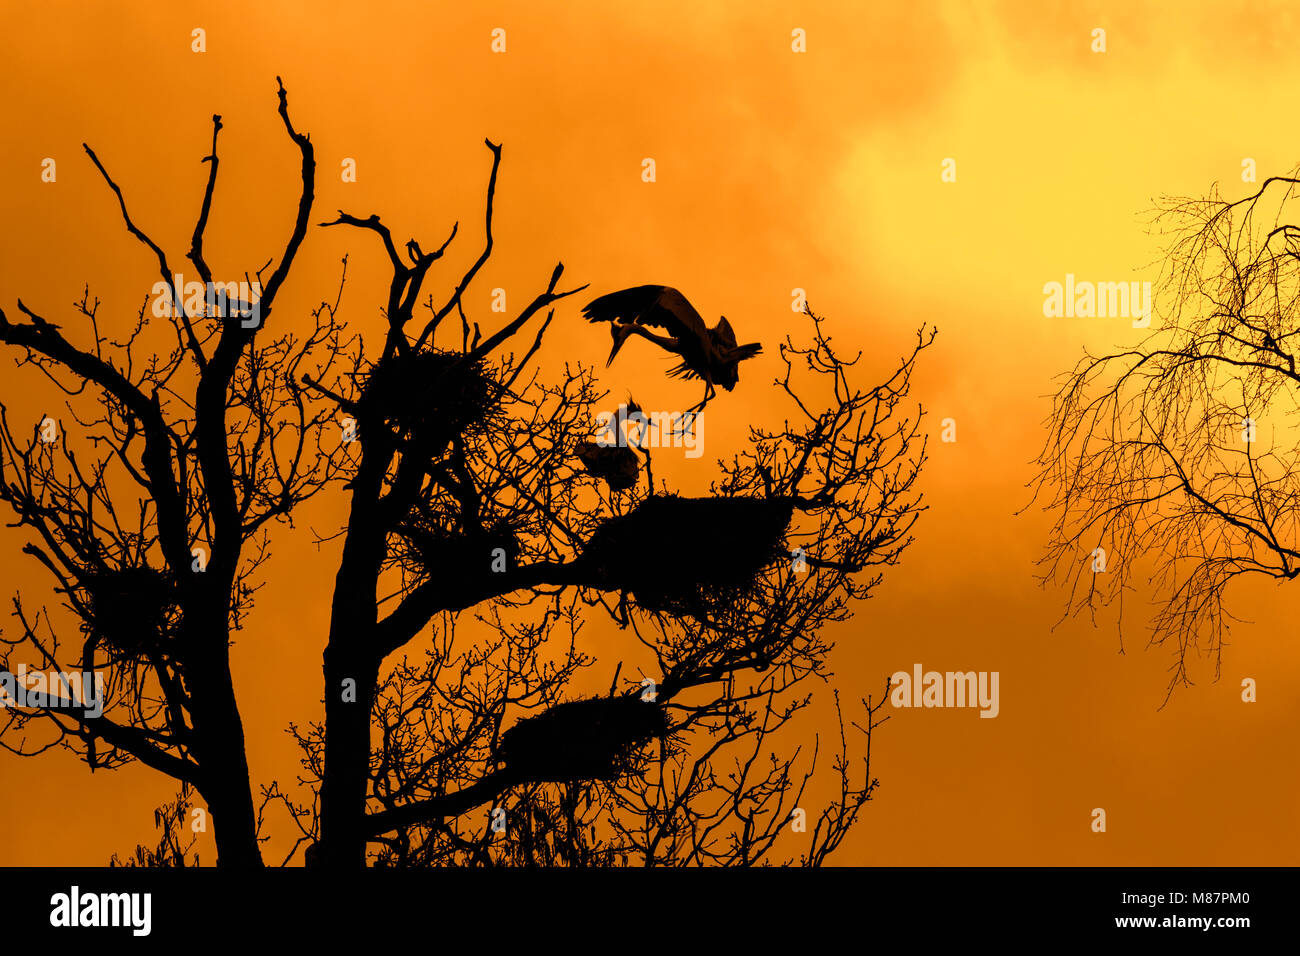 Graureiher (Ardea cinerea) Landung auf Nest in an heronry/Reiher rookery gegen orange Himmel bei Sonnenuntergang Silhouette im Frühjahr Stockfoto